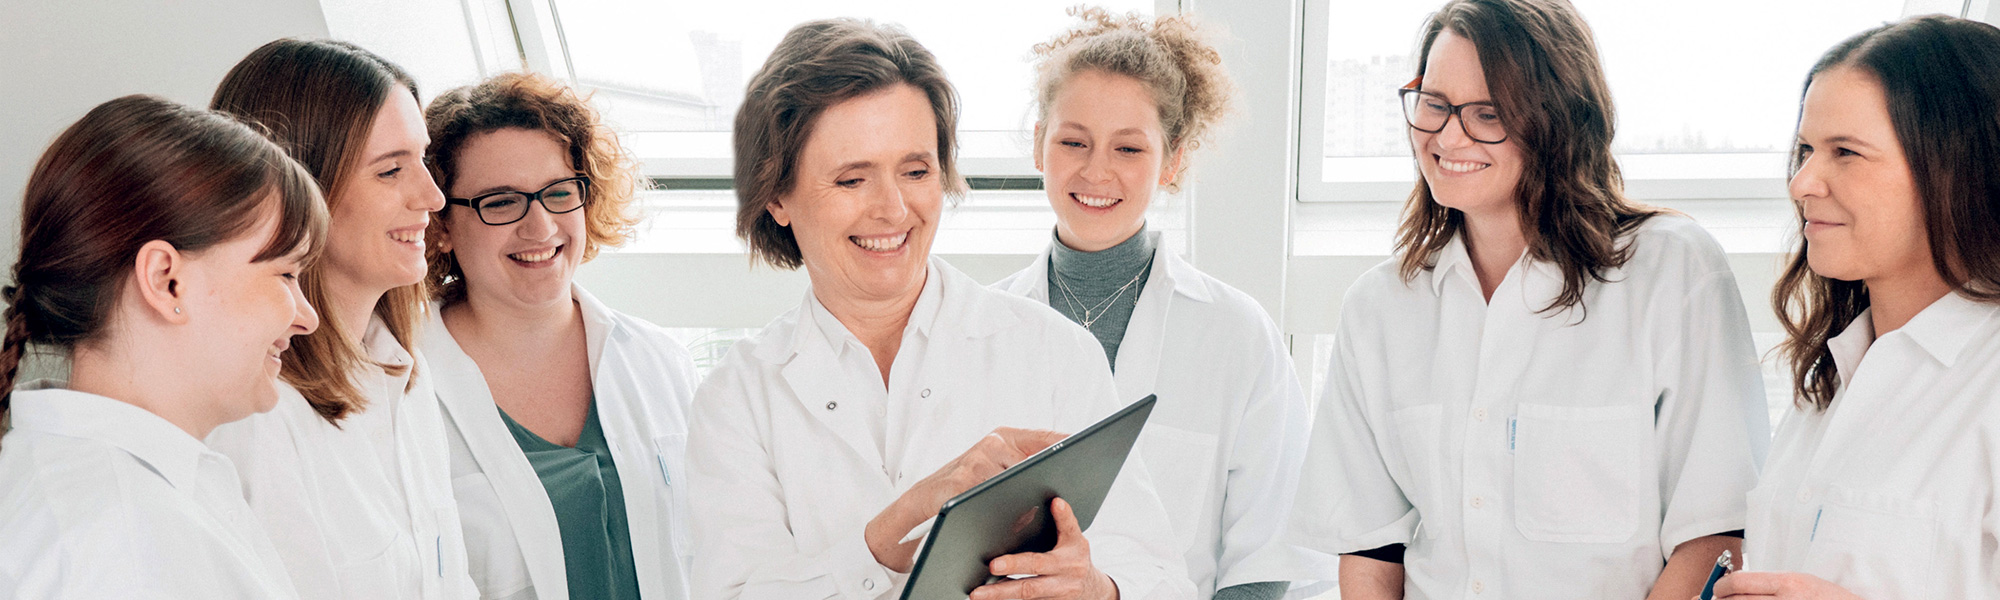 Gruppenfoto mehrerer Ärzte in weißen Kitteln, mit einer Frau die auf ein Tablet zeigt in der Mitte.